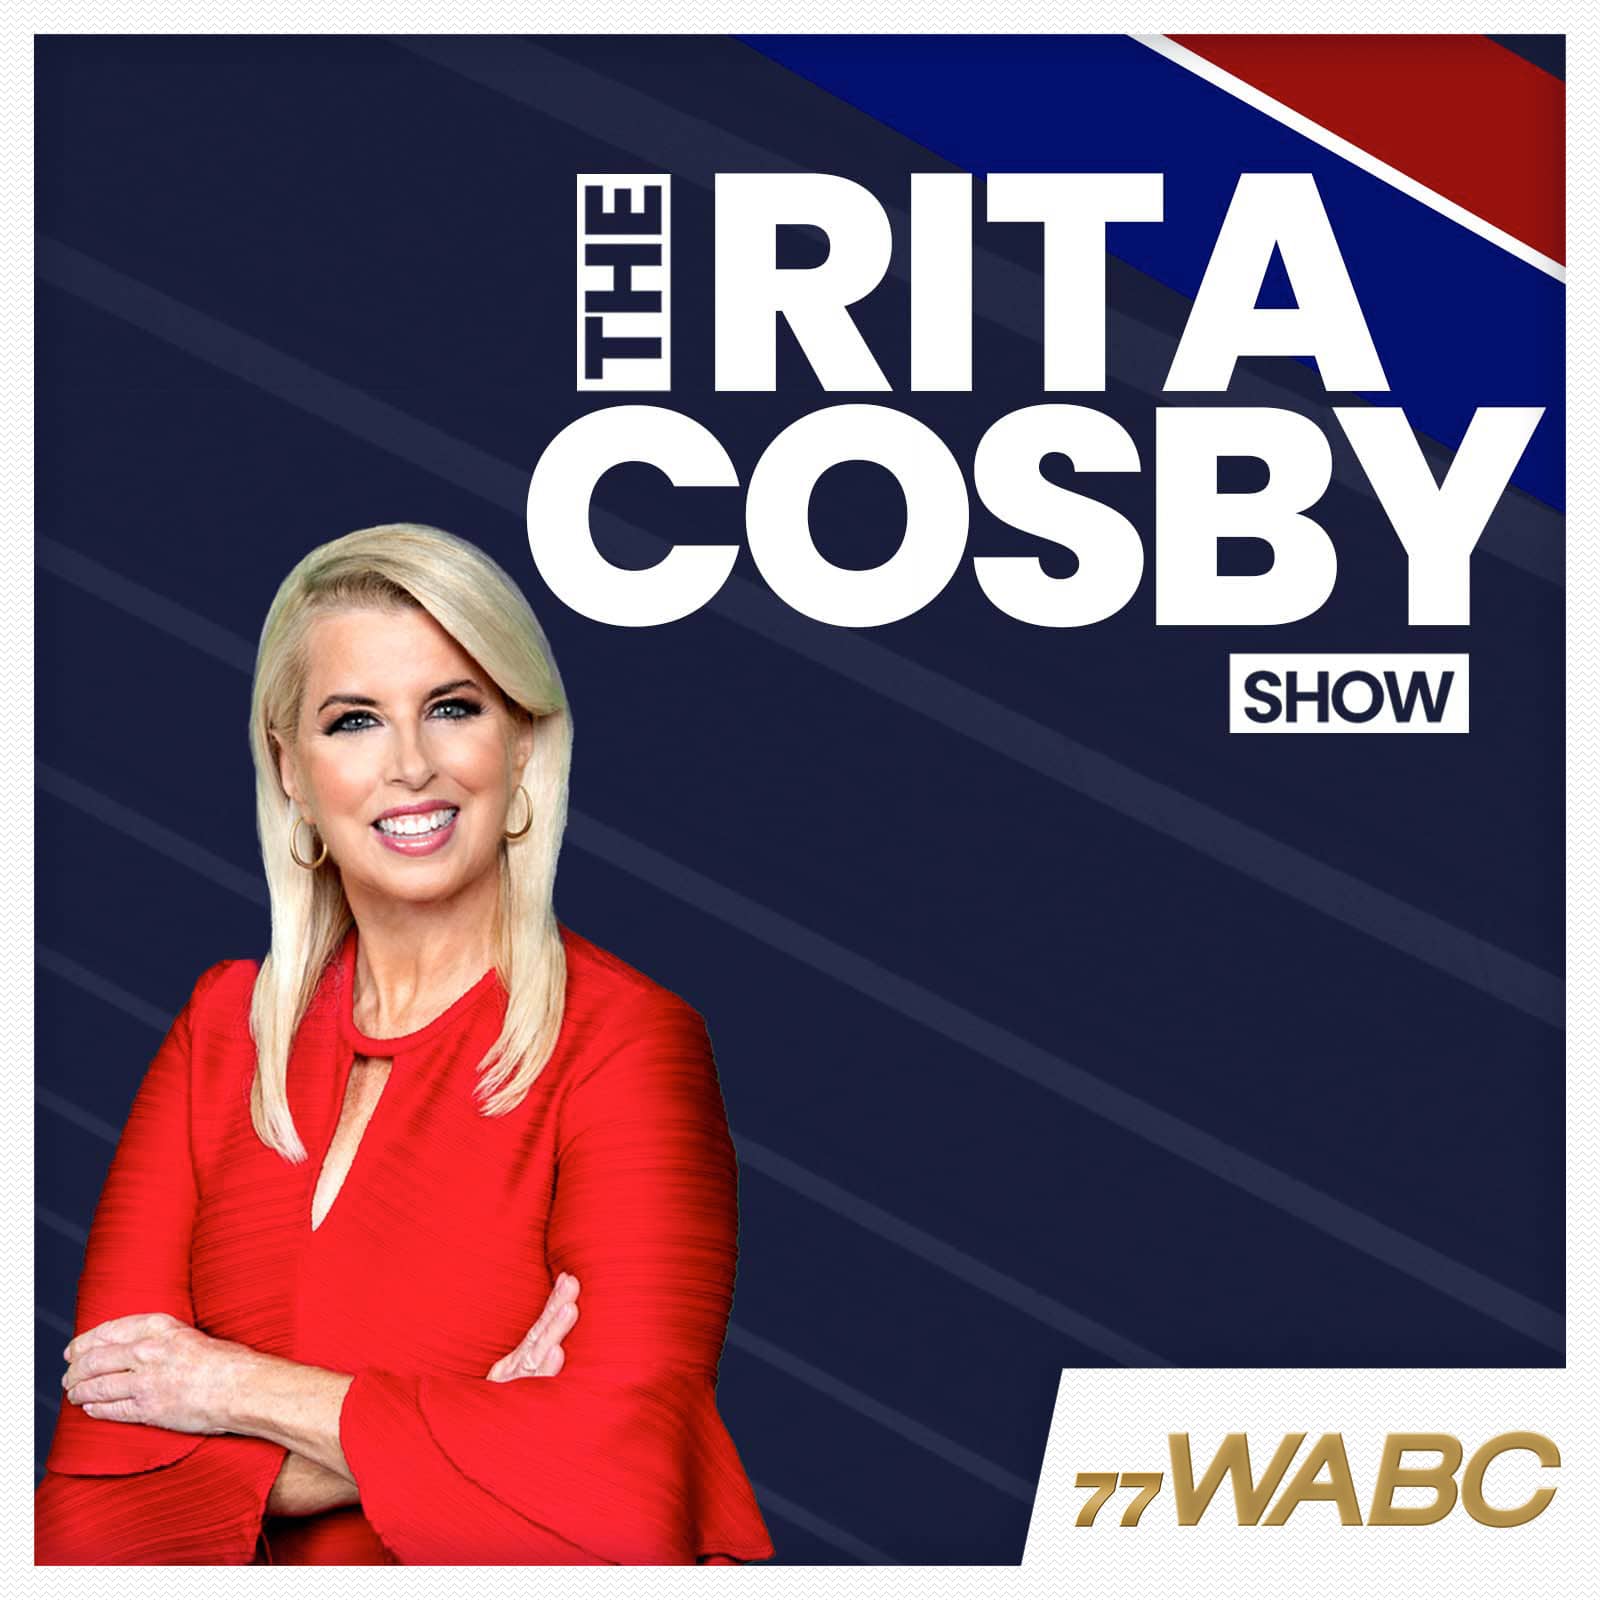 rita-cosby-podcast-new-logo-244